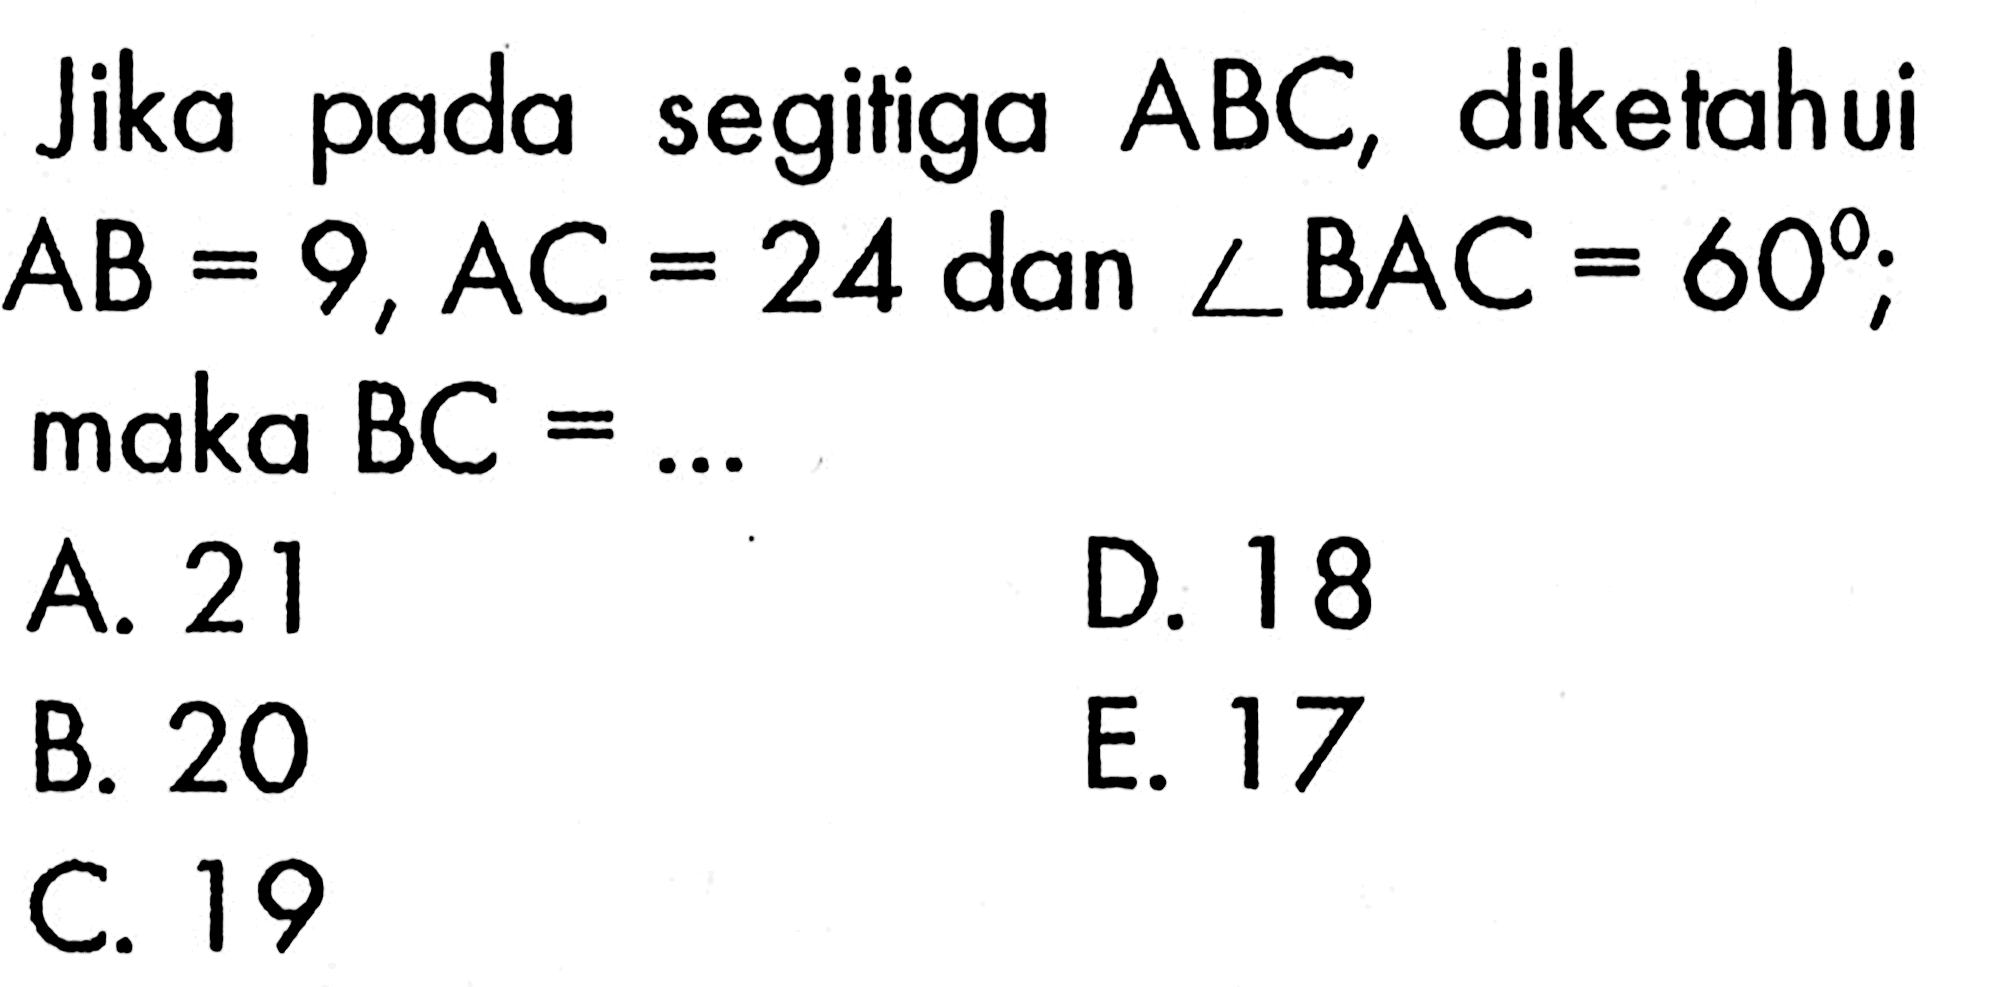 Jika pada segitiga  ABC , diketahui  AB=9, AC=24  dan  sudut BAC=60 ;  maka  BC=.... 